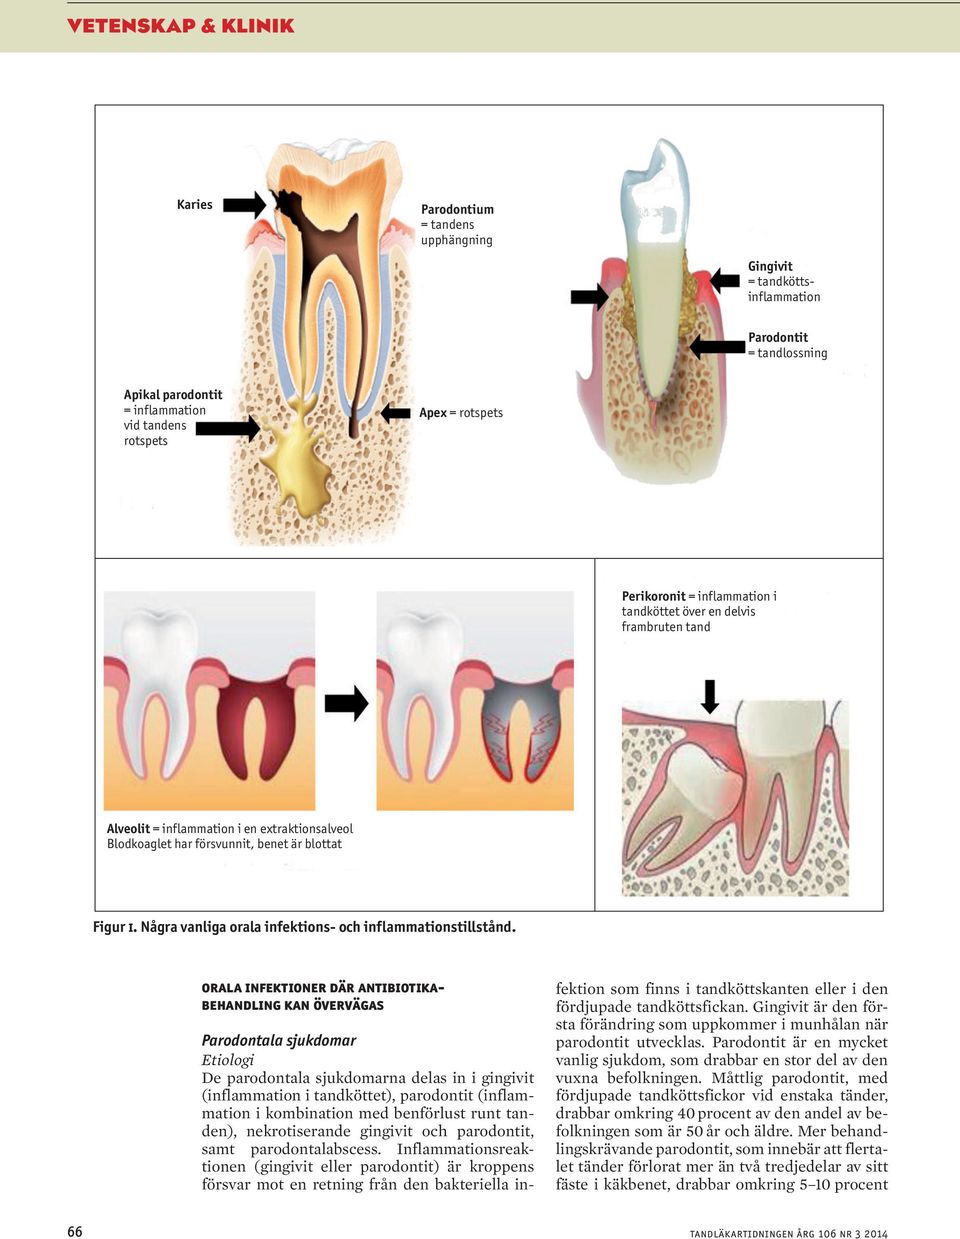 Några vanliga orala infektions- och inflammationstillstånd.